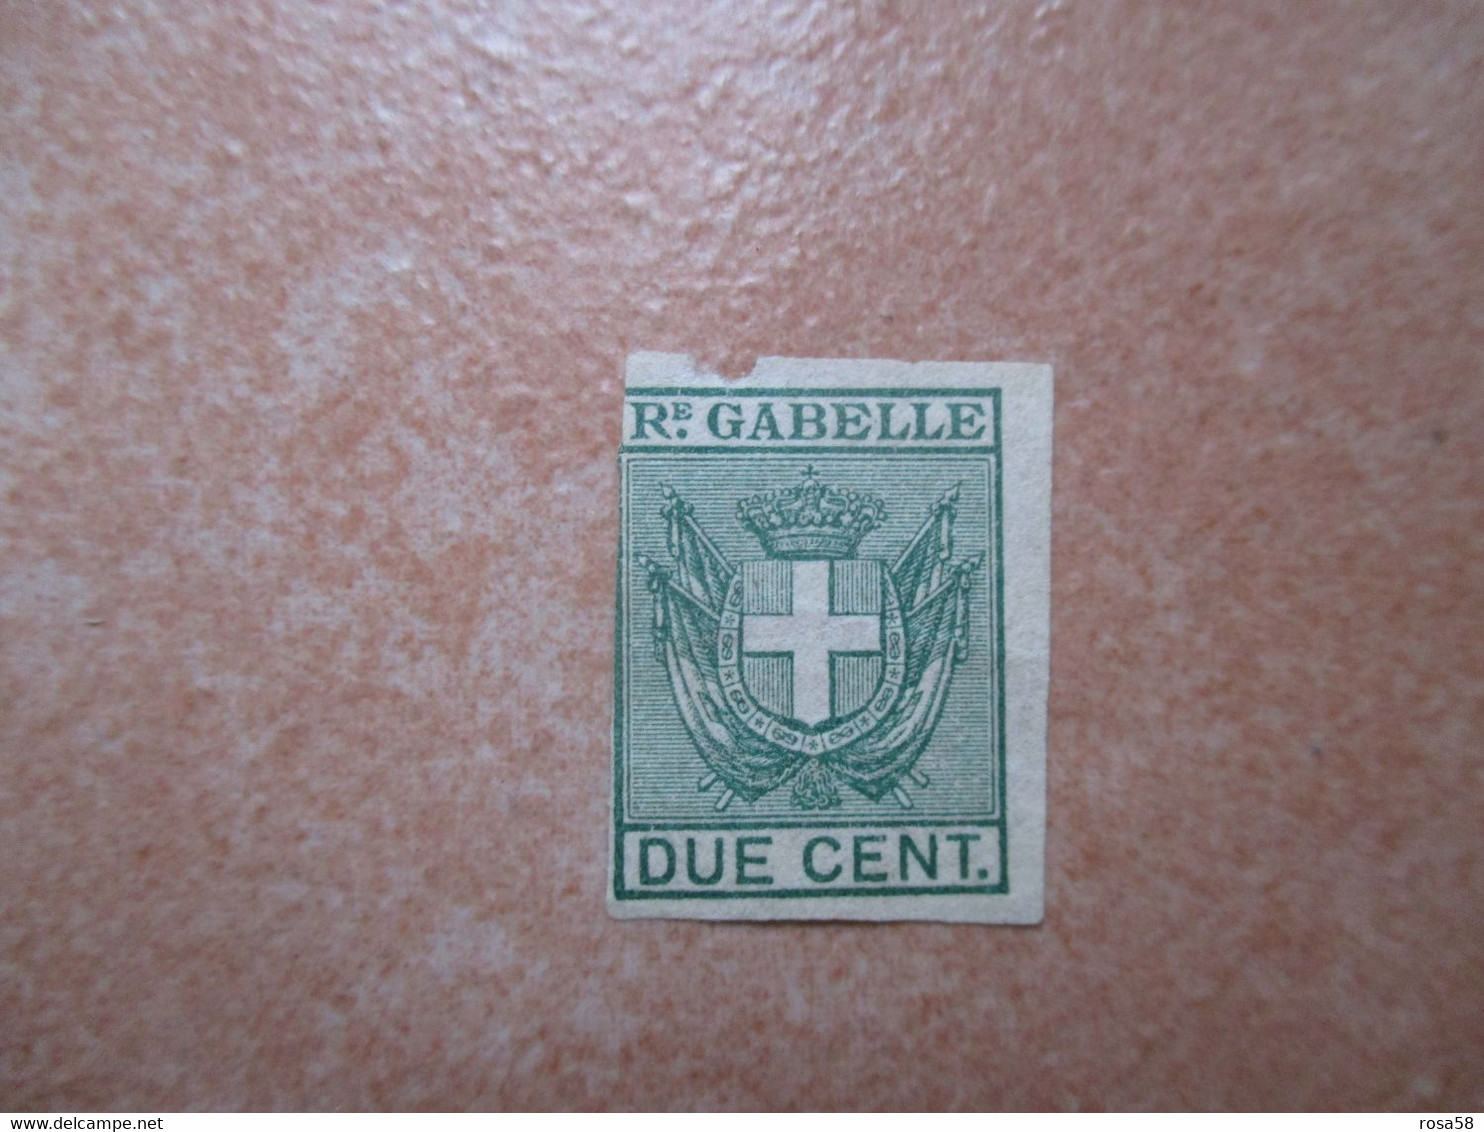 REGNO D'ITALIA N.2 Marche REALI GABELLE Cent. 3 1/2 E CENT. 2 - Revenue Stamps